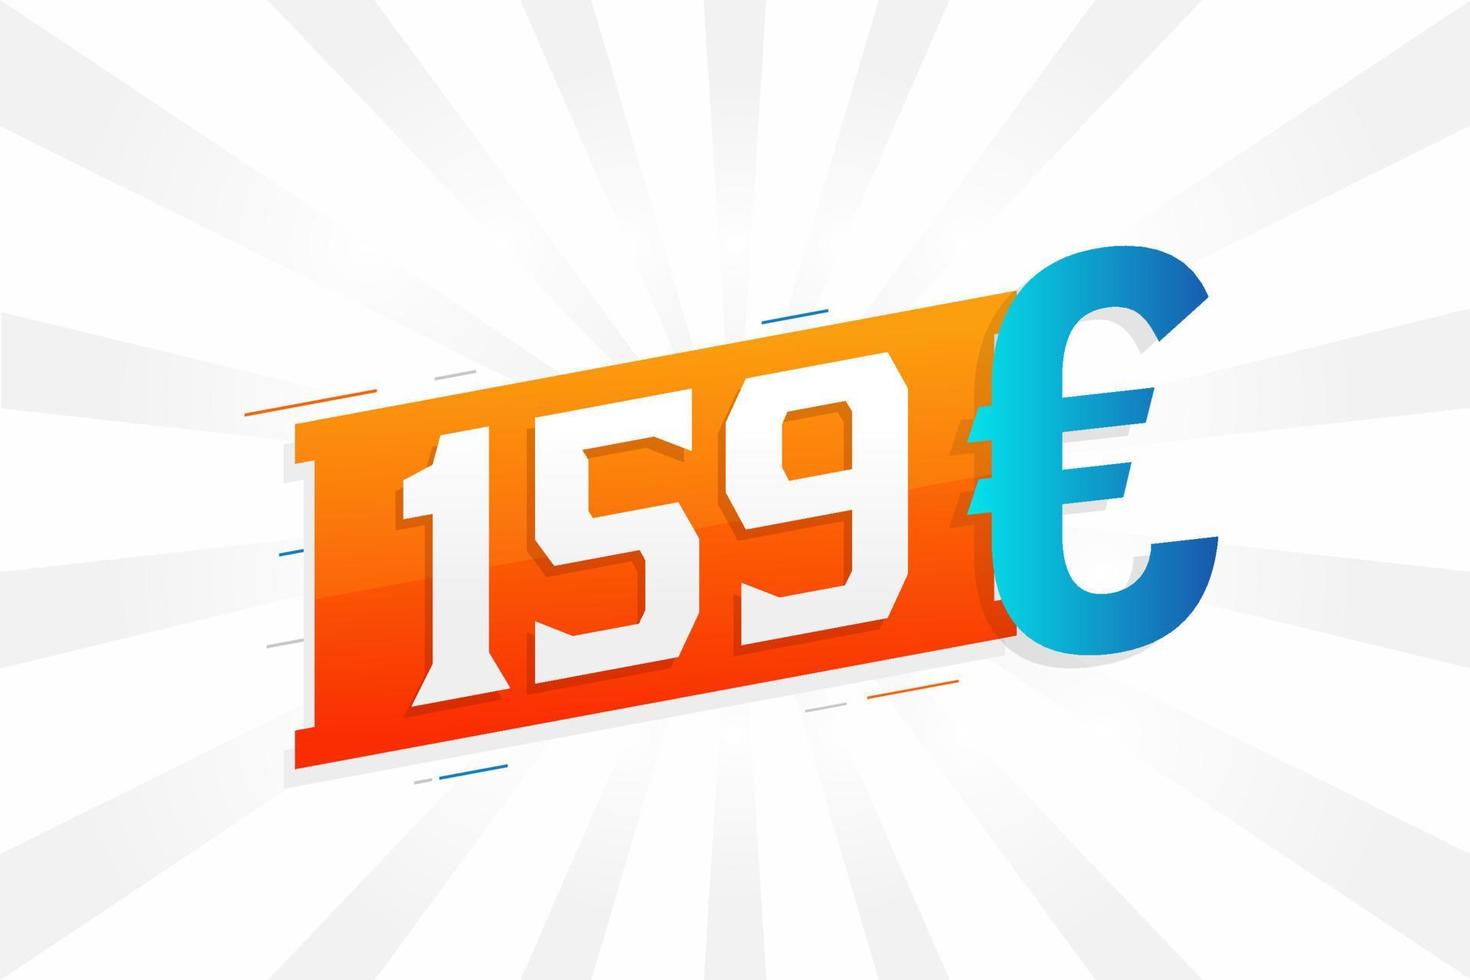 símbolo de texto de vetor de moeda de 159 euros. vetor de estoque de dinheiro da união europeia de 159 euros